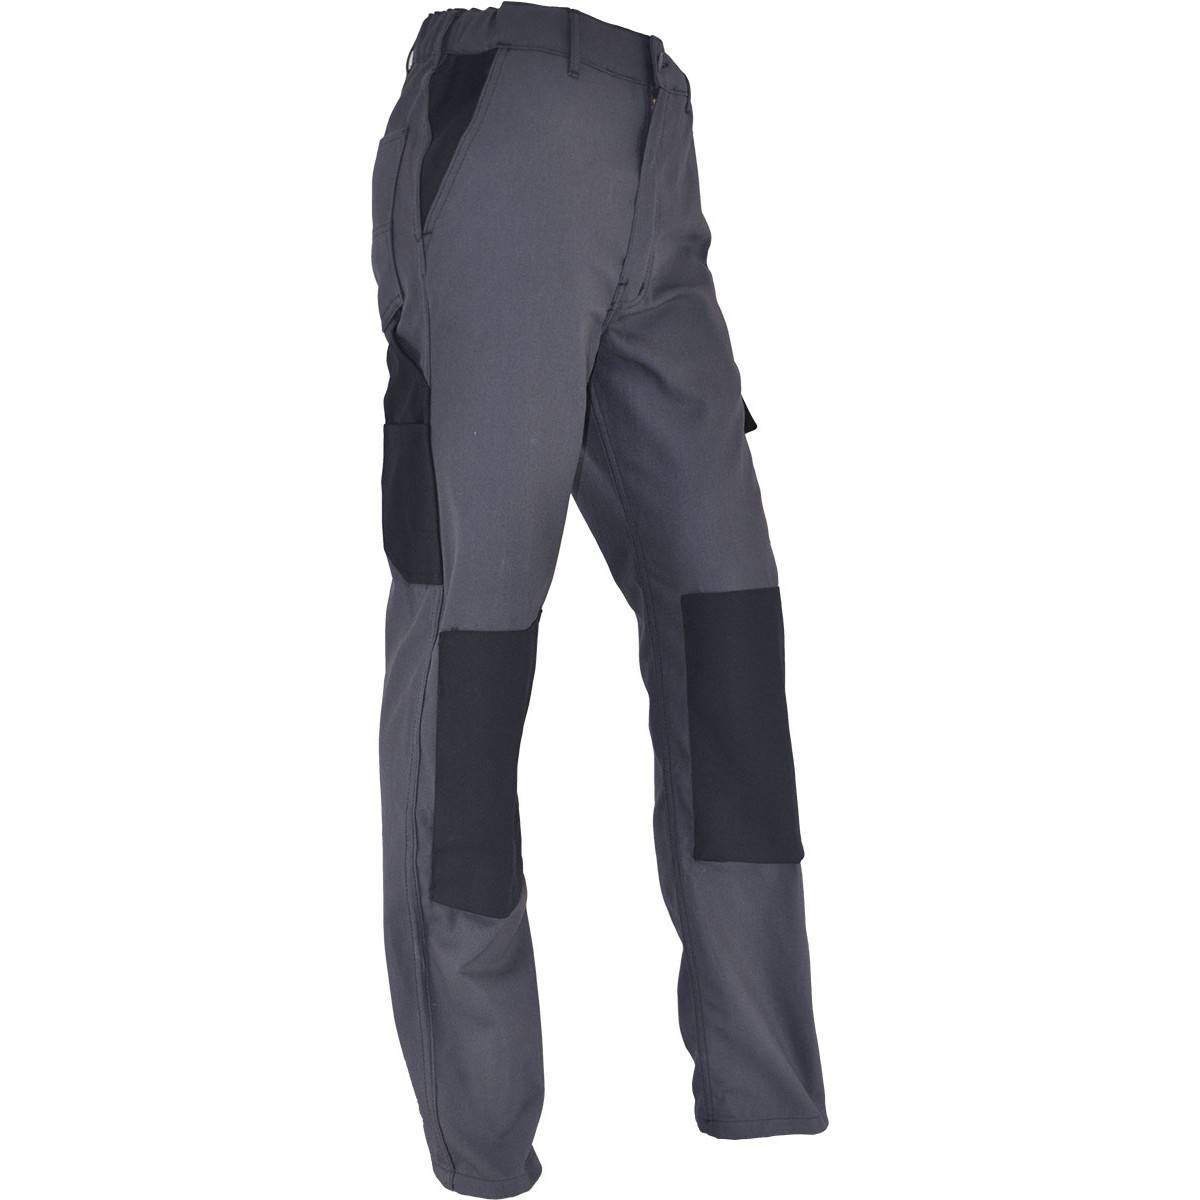 Pantalones de trabajo cómodos PMPC talla 44, gris antracita